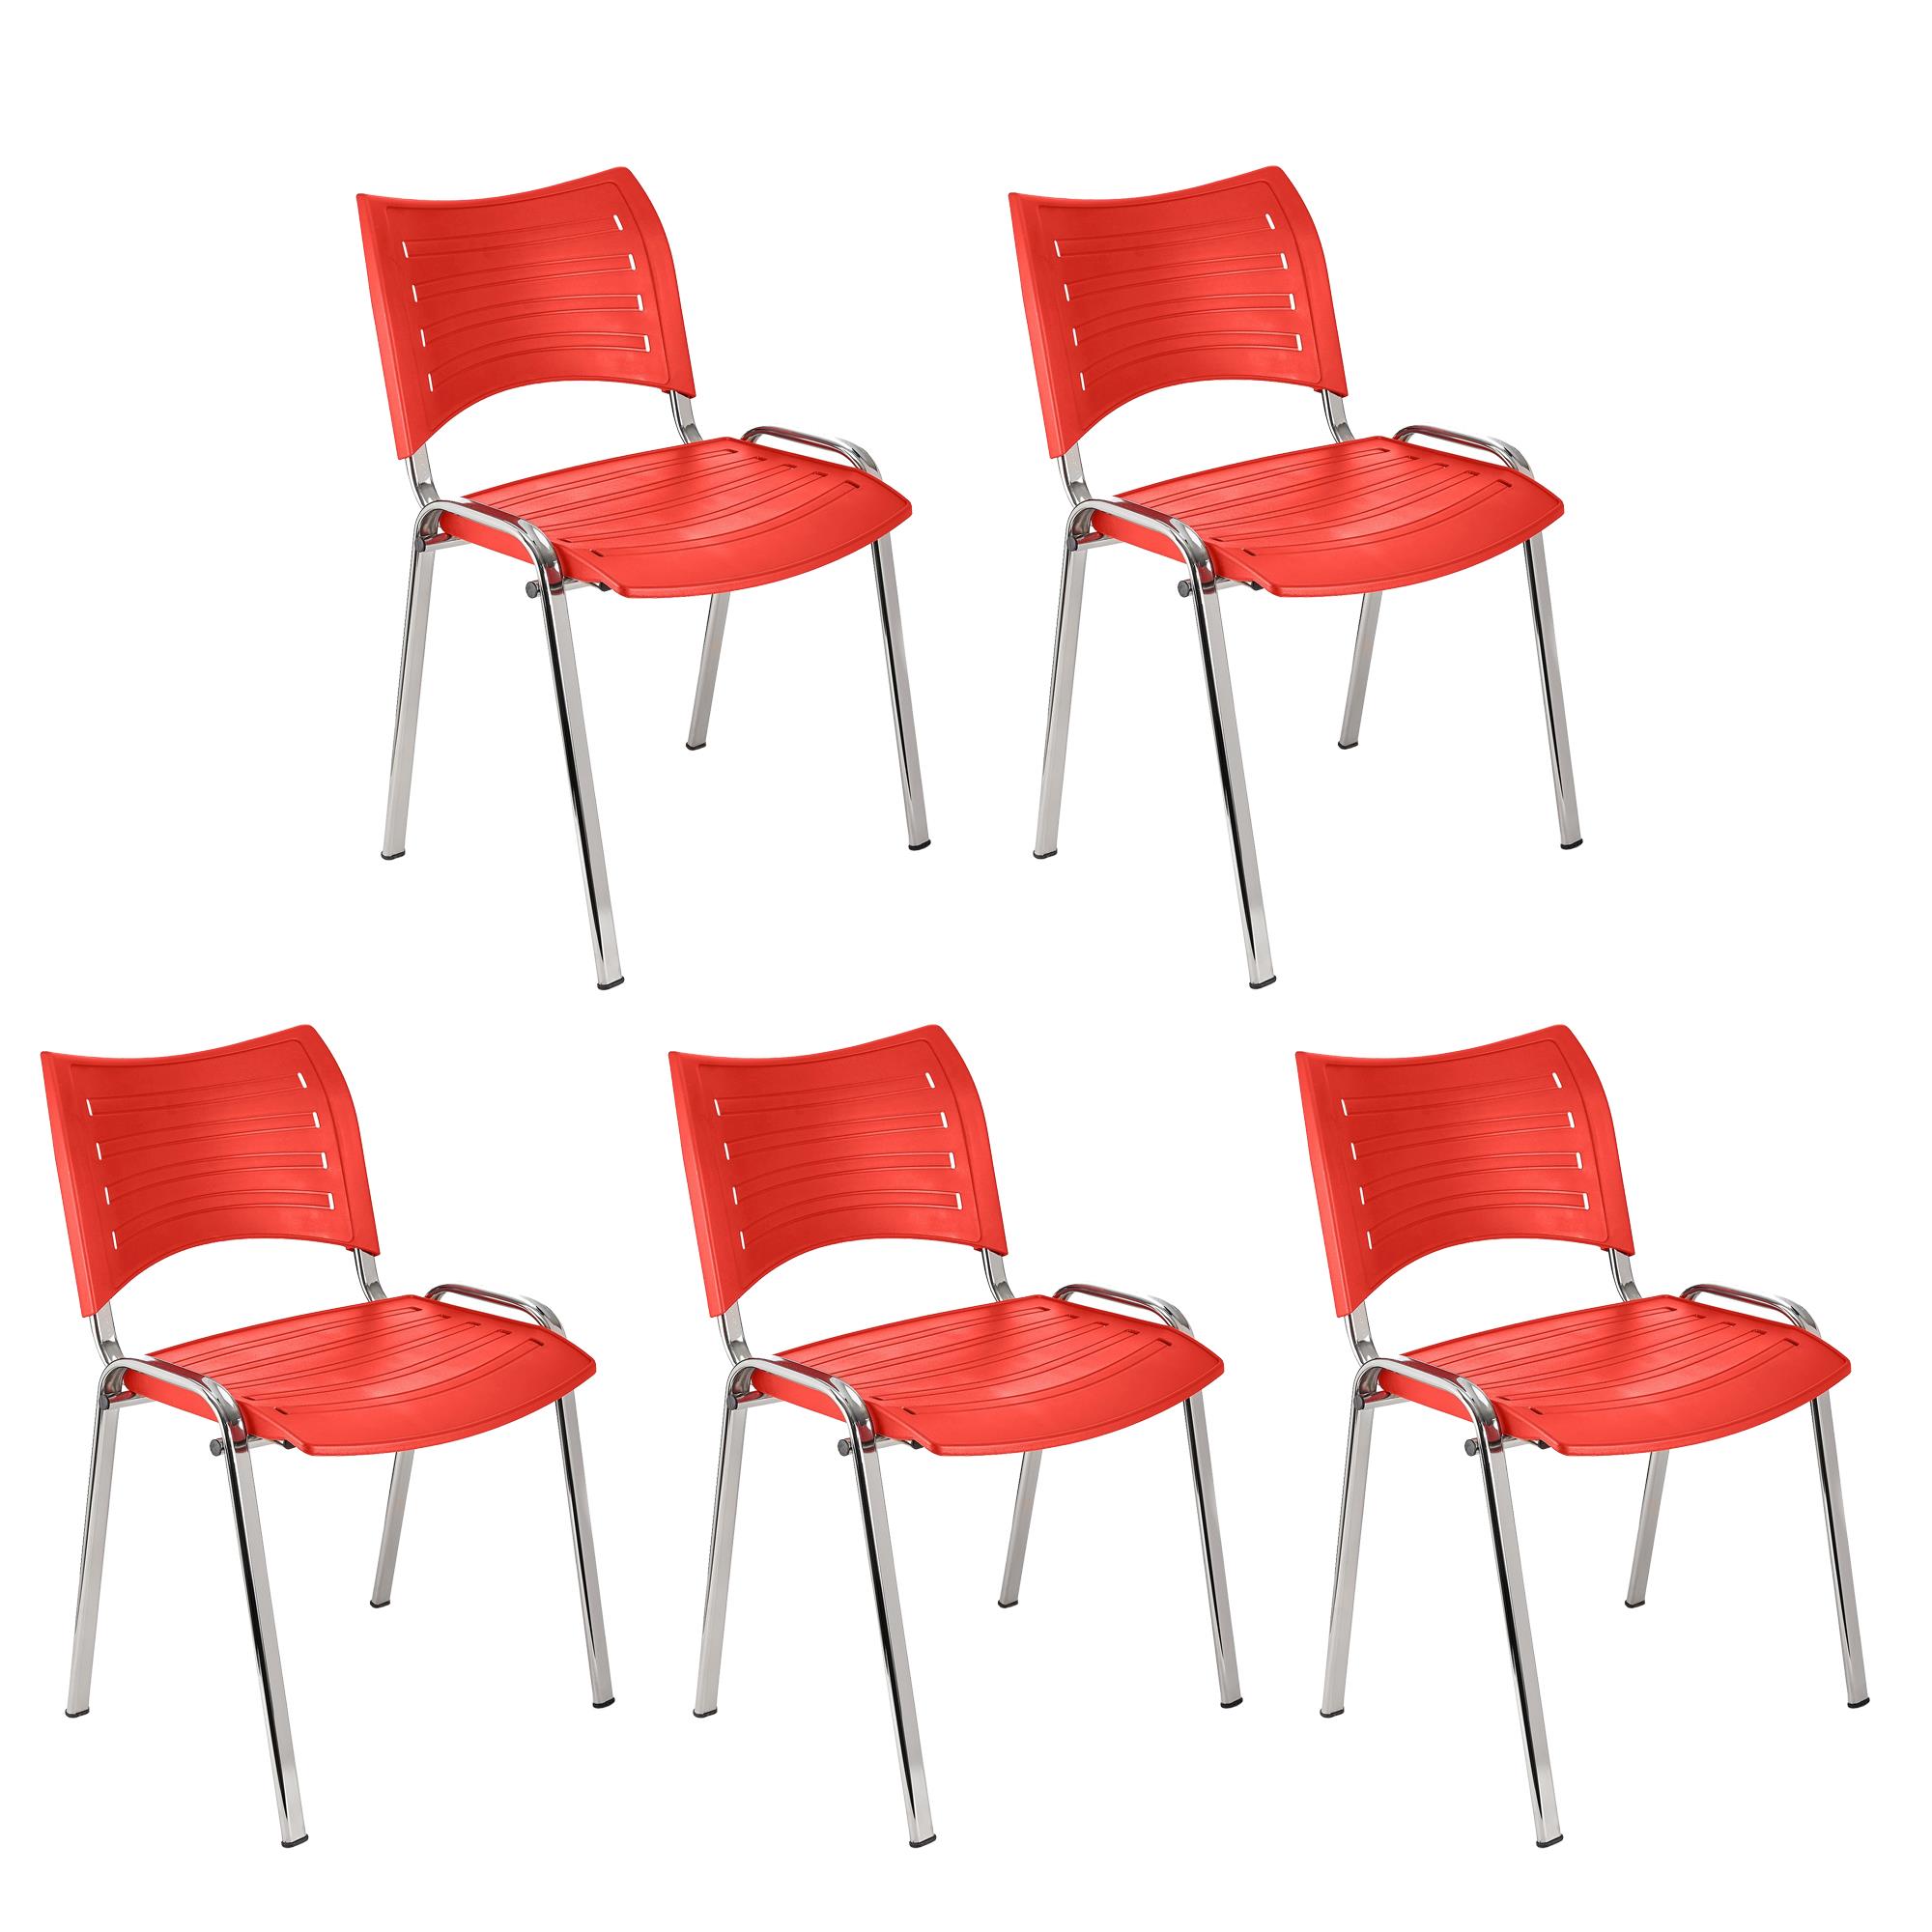 Lote 5 Cadeiras de Visita ELVA, Confortável e Prática, Pernas Cromadas, Cor Vermelho